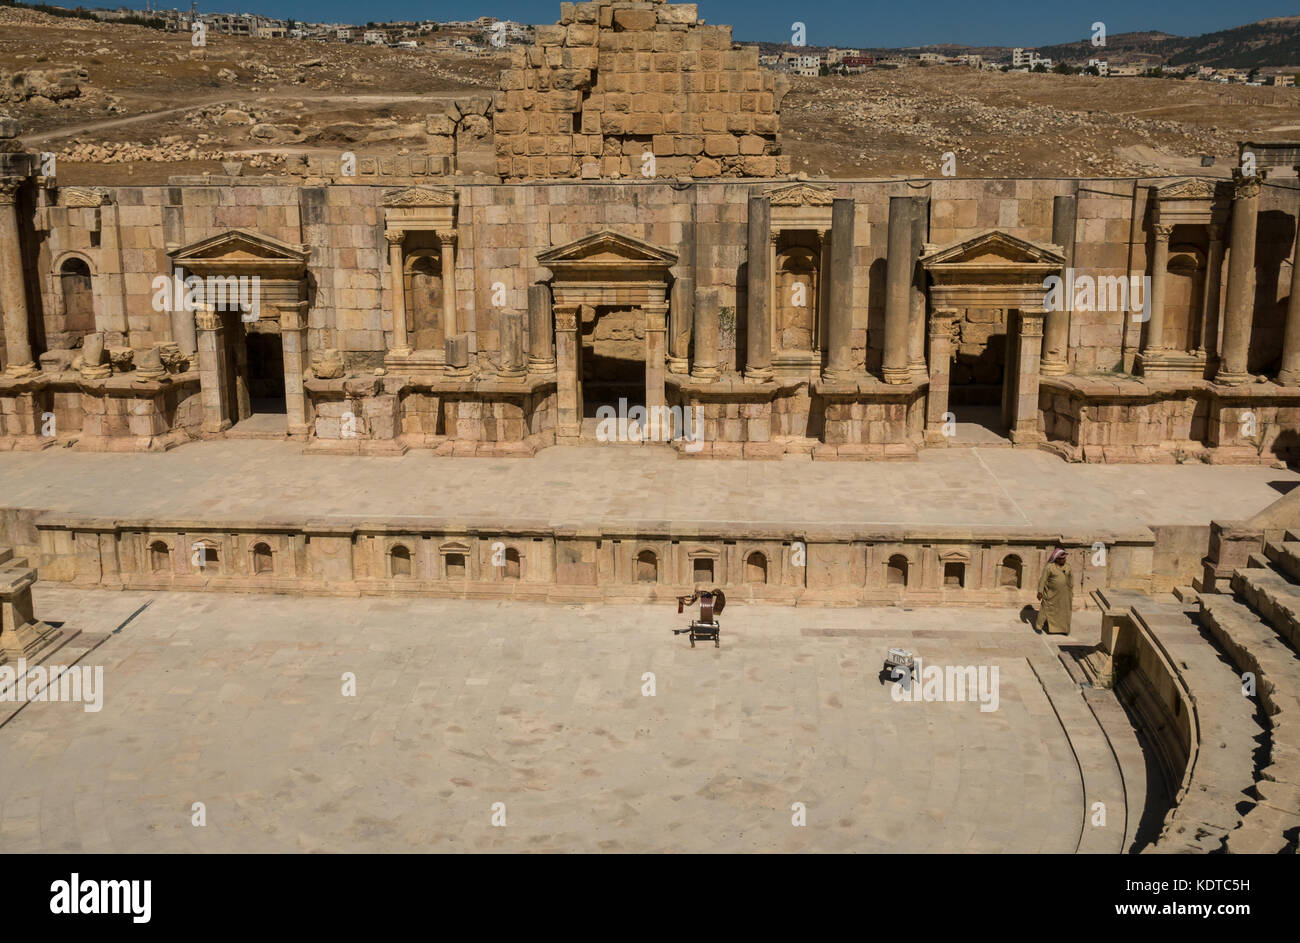 Tappa nel sud teatro anfiteatro, città romana di Jerash, antica Gerasa, sito archeologico, Giordania, Medio Oriente con uomo arabo in veste tradizionale Foto Stock